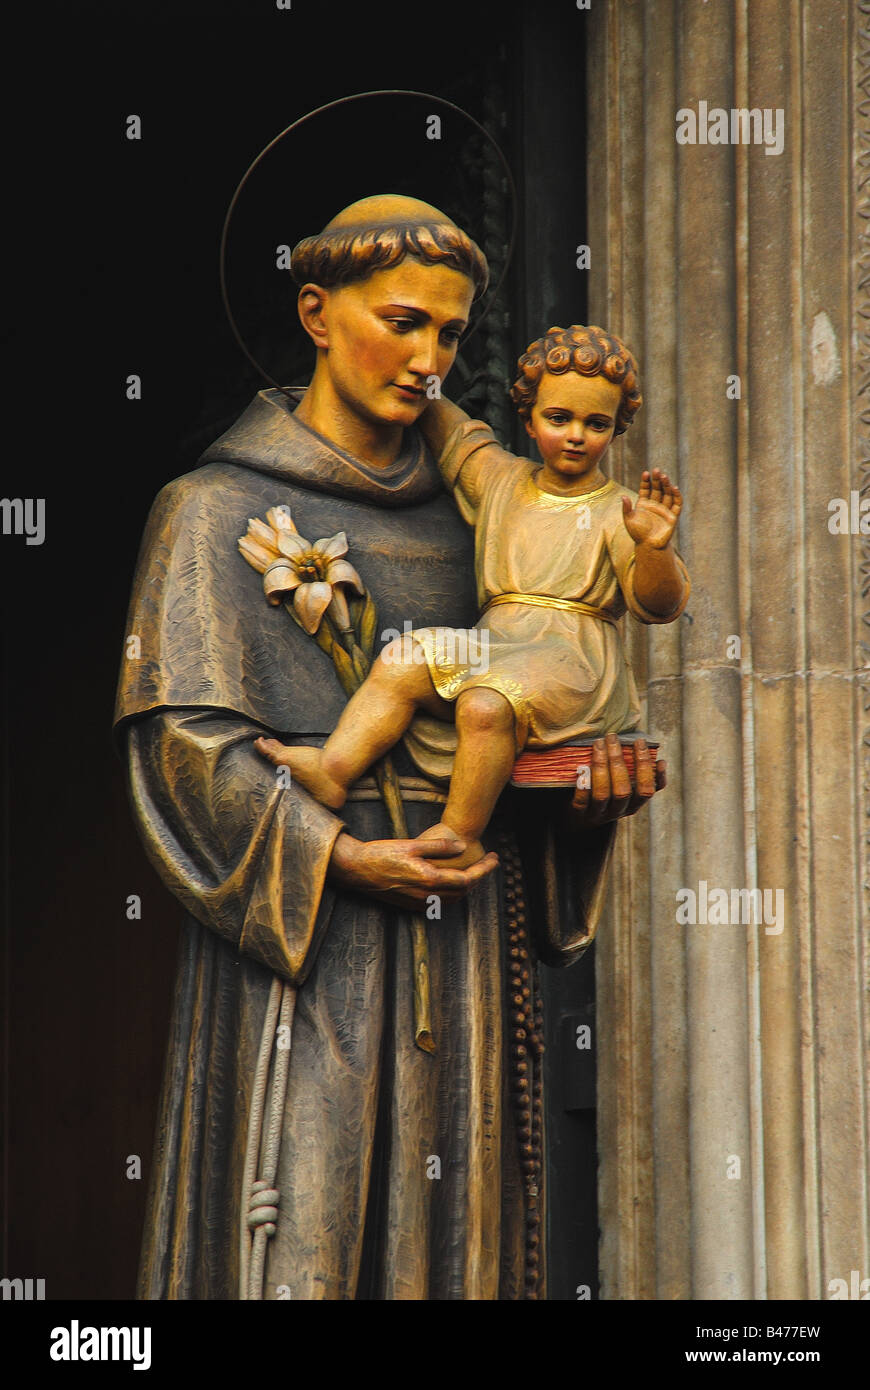 St anthony padua holy catholic hi-res stock photography and images - Alamy